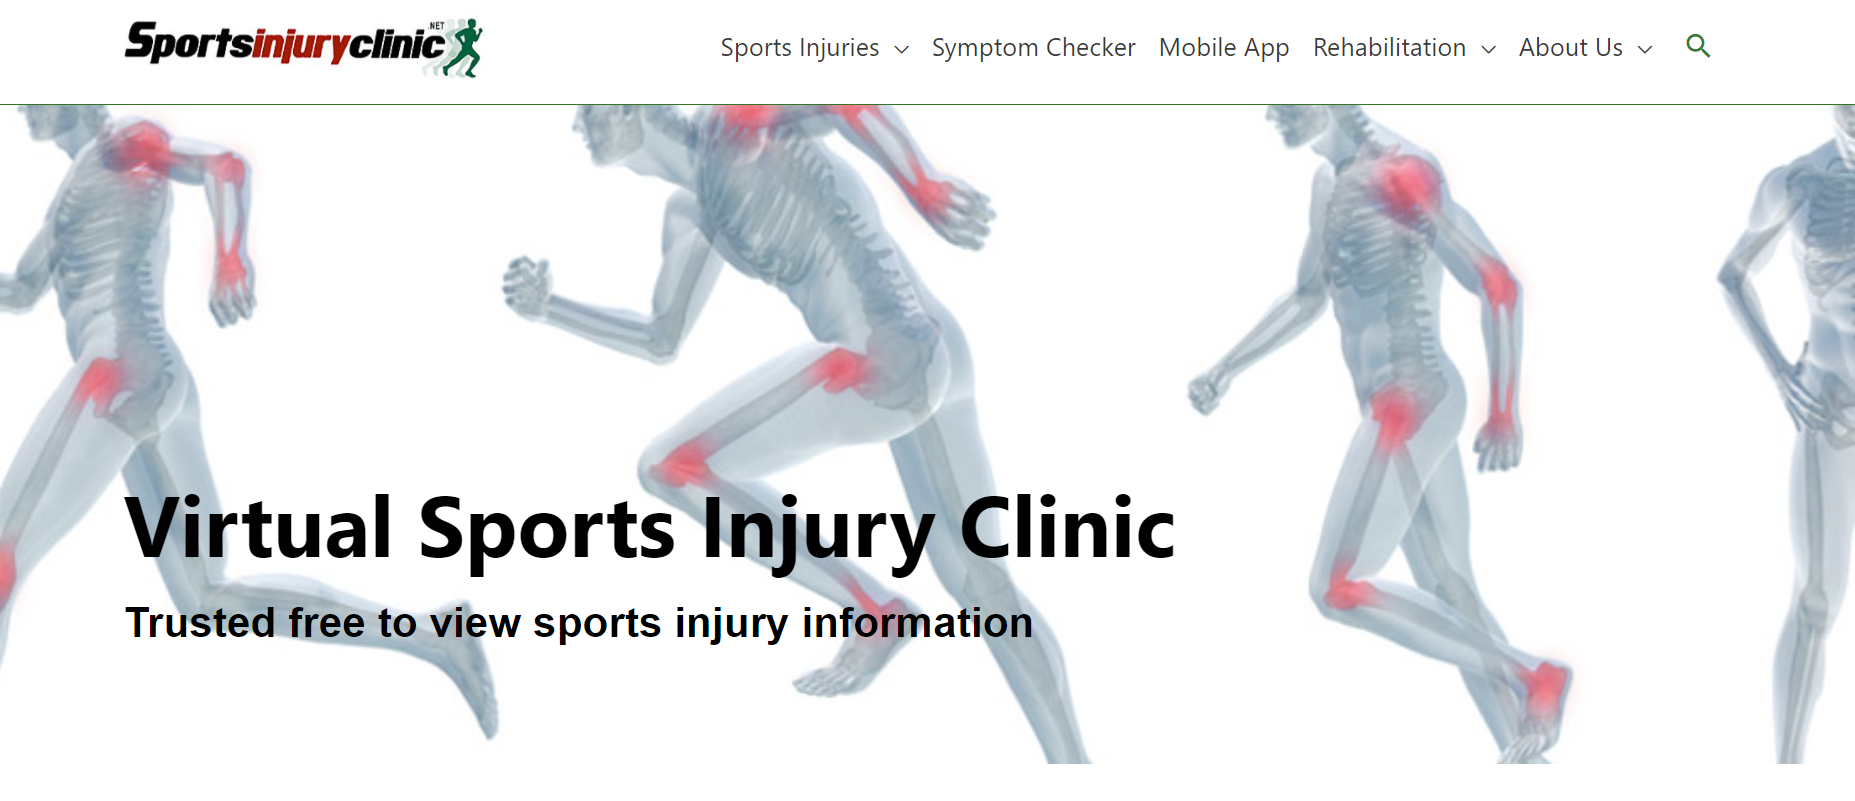 Virtual Sports Injury Clinic - Sportsinjuryclinic.net